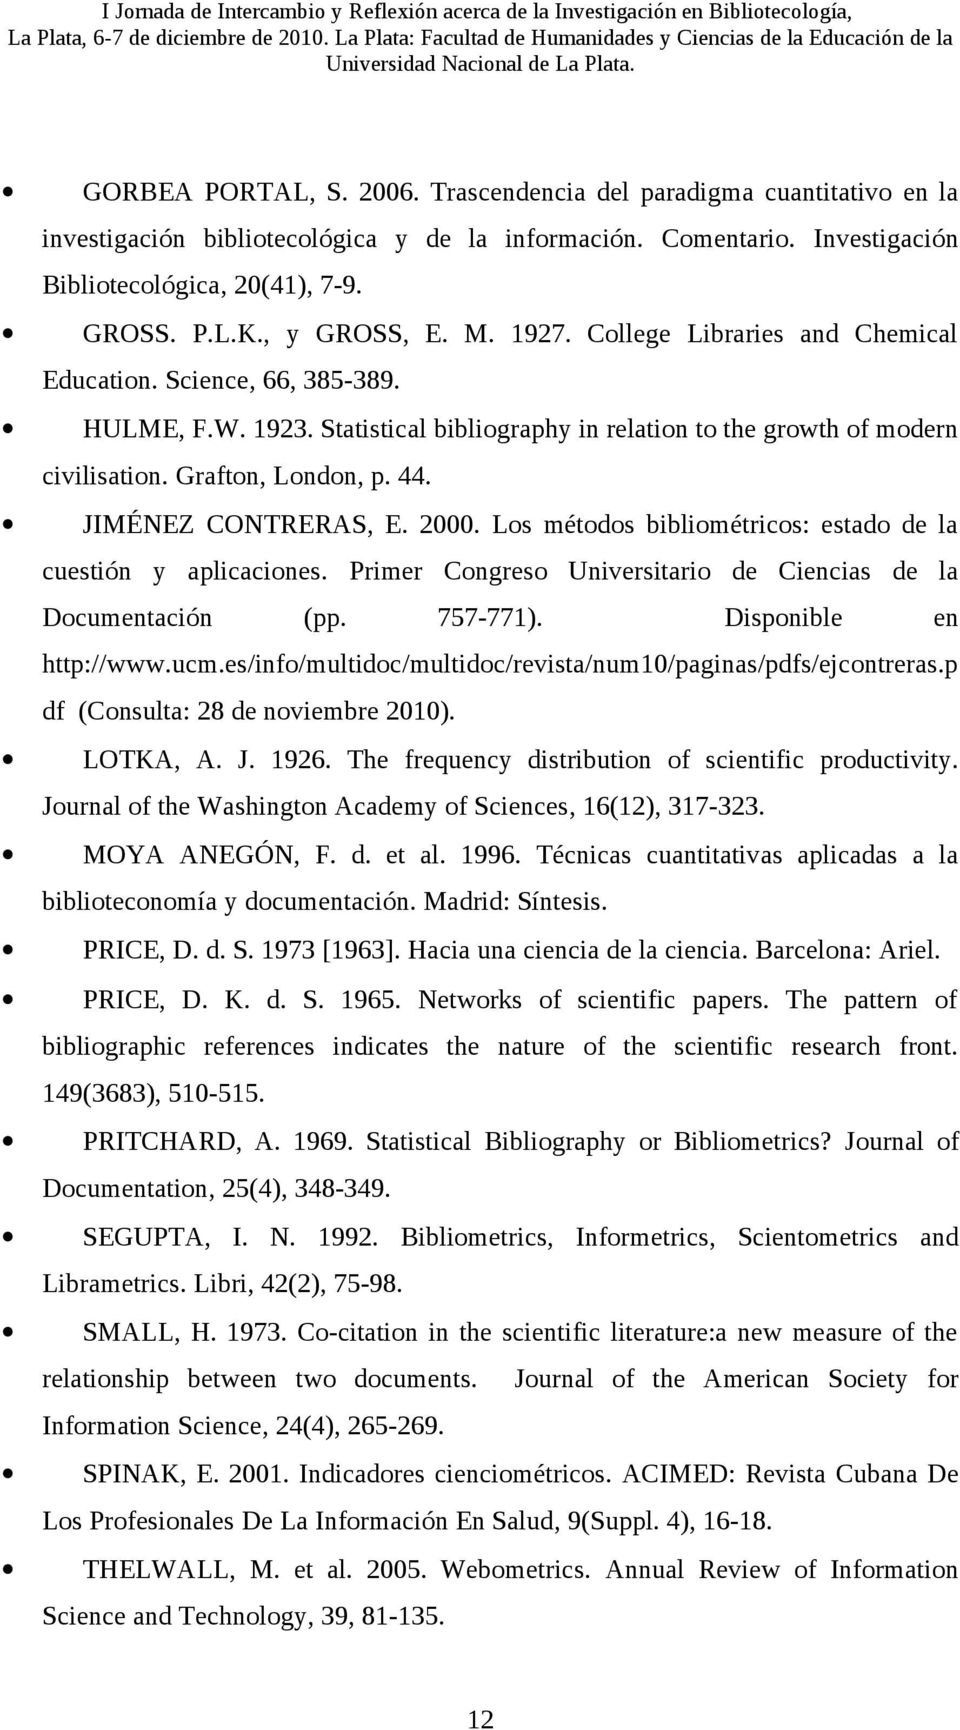 44. JIMÉNEZ CONTRERAS, E. 2000. Los métodos bibliométricos: estado de la cuestión y aplicaciones. Primer Congreso Universitario de Ciencias de la Documentación (pp. 757-771). Disponible en http://www.